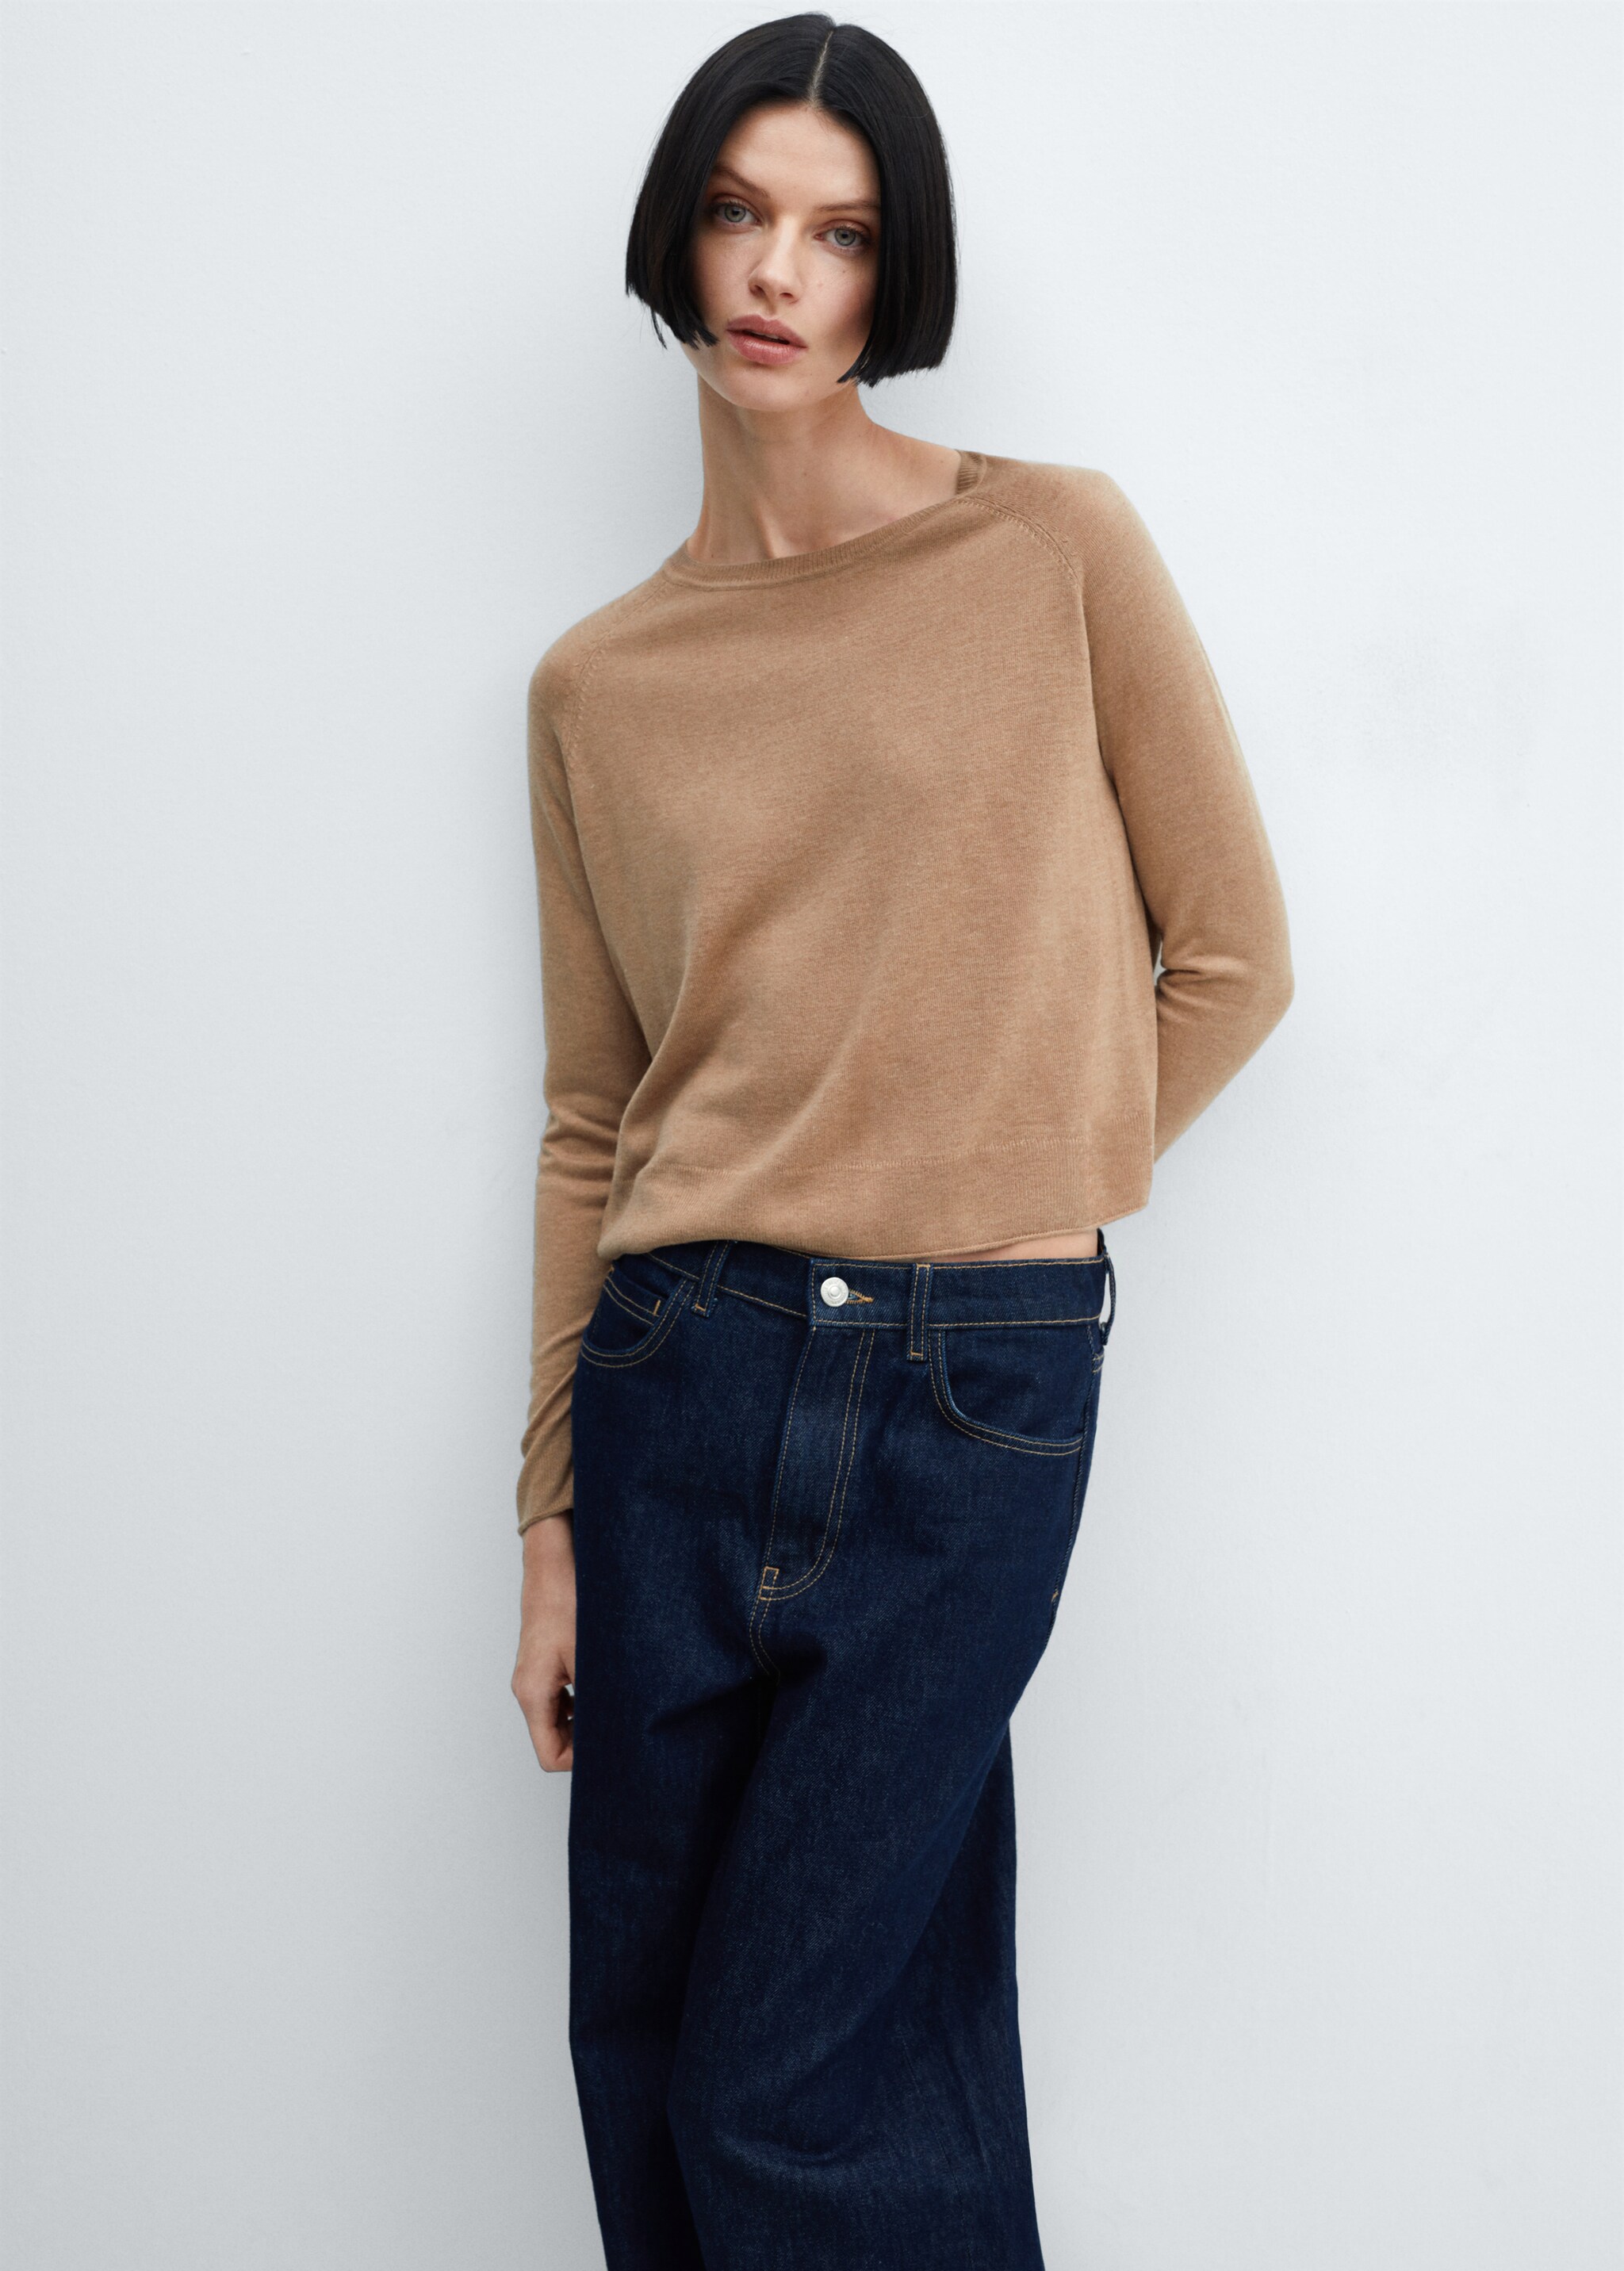 Fine-knit round-neck sweater - Medium plane